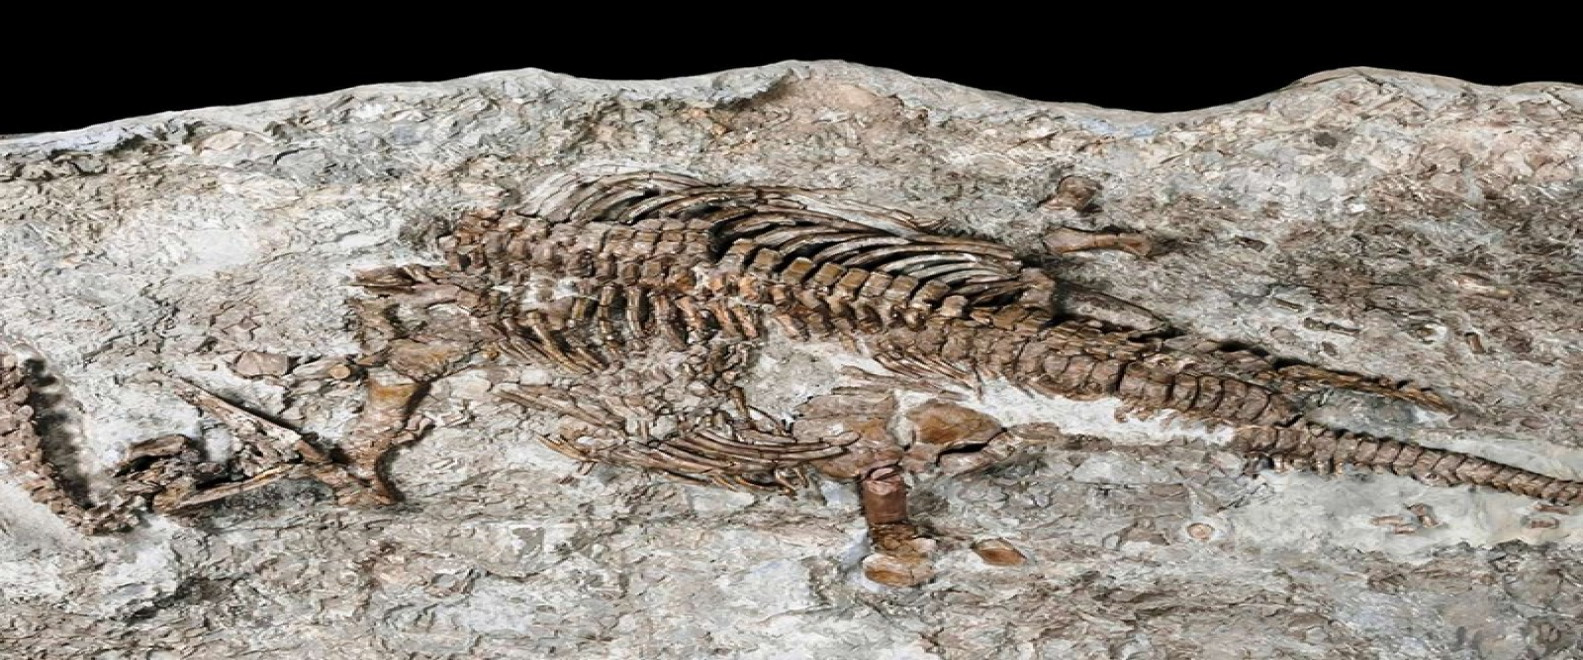 Tiznit: Descubrimiento de fósiles de un dinosaurio raro | Oficina Nacional  de Turismo de Marruecos